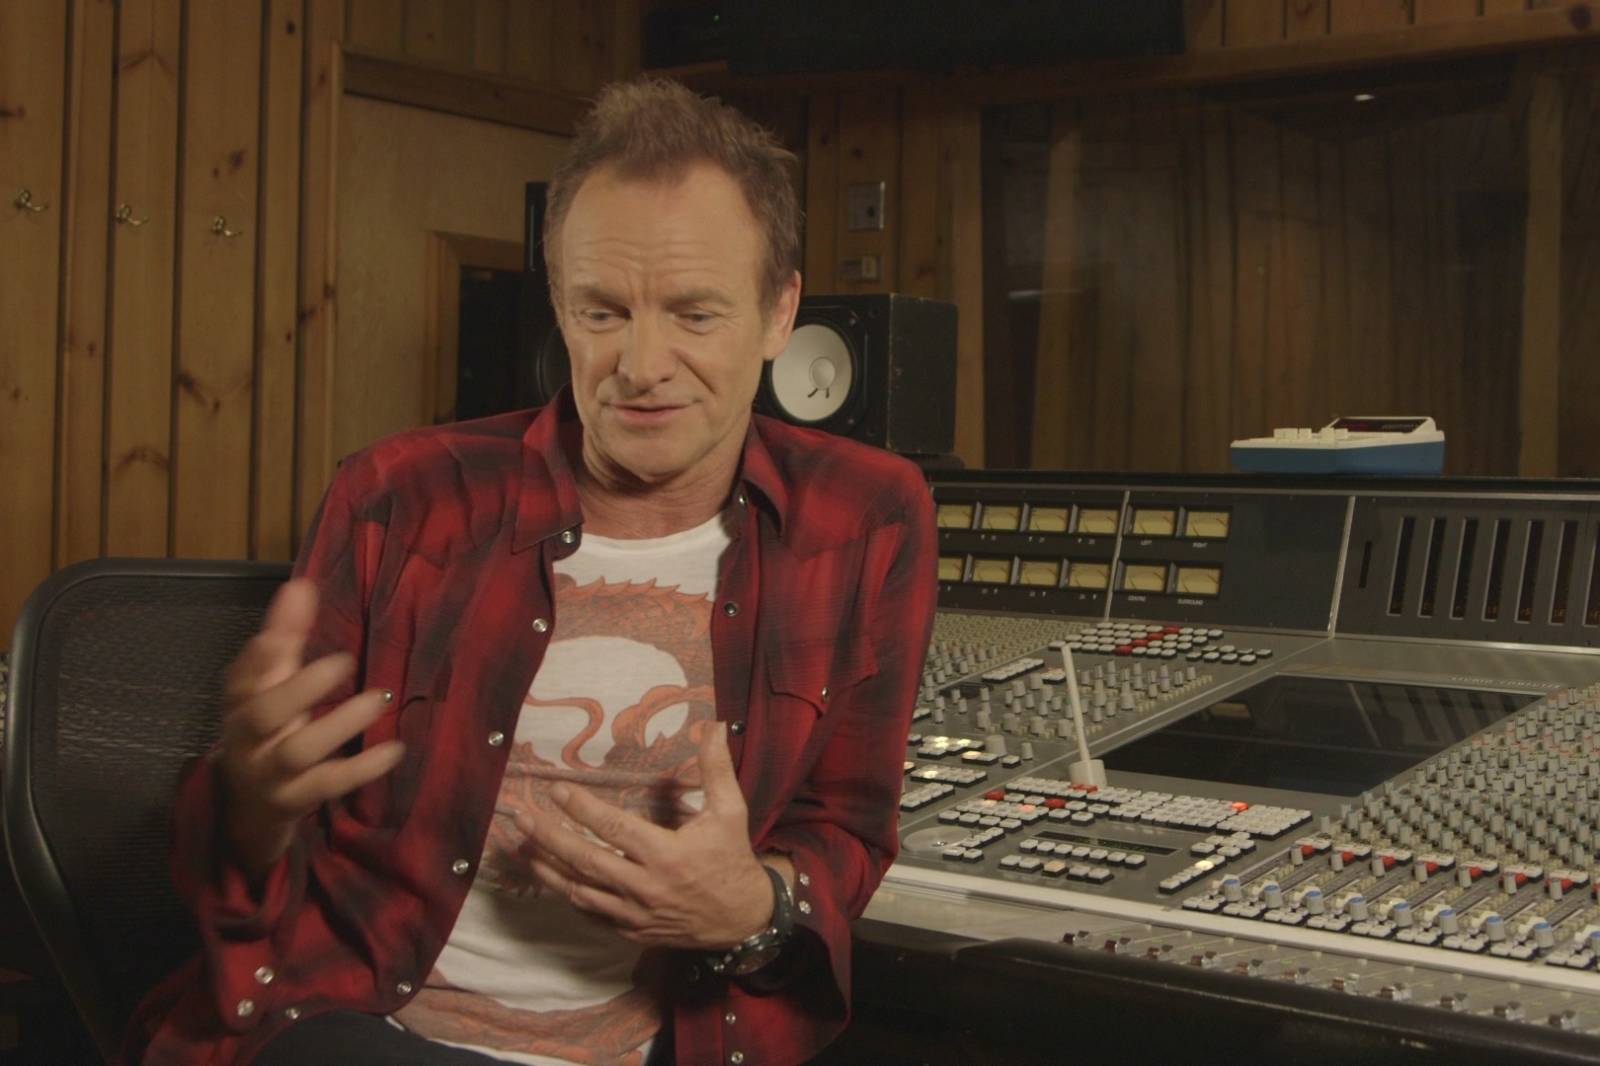 RECENZE: Sting natočil rockový soundtrack životních příběhů